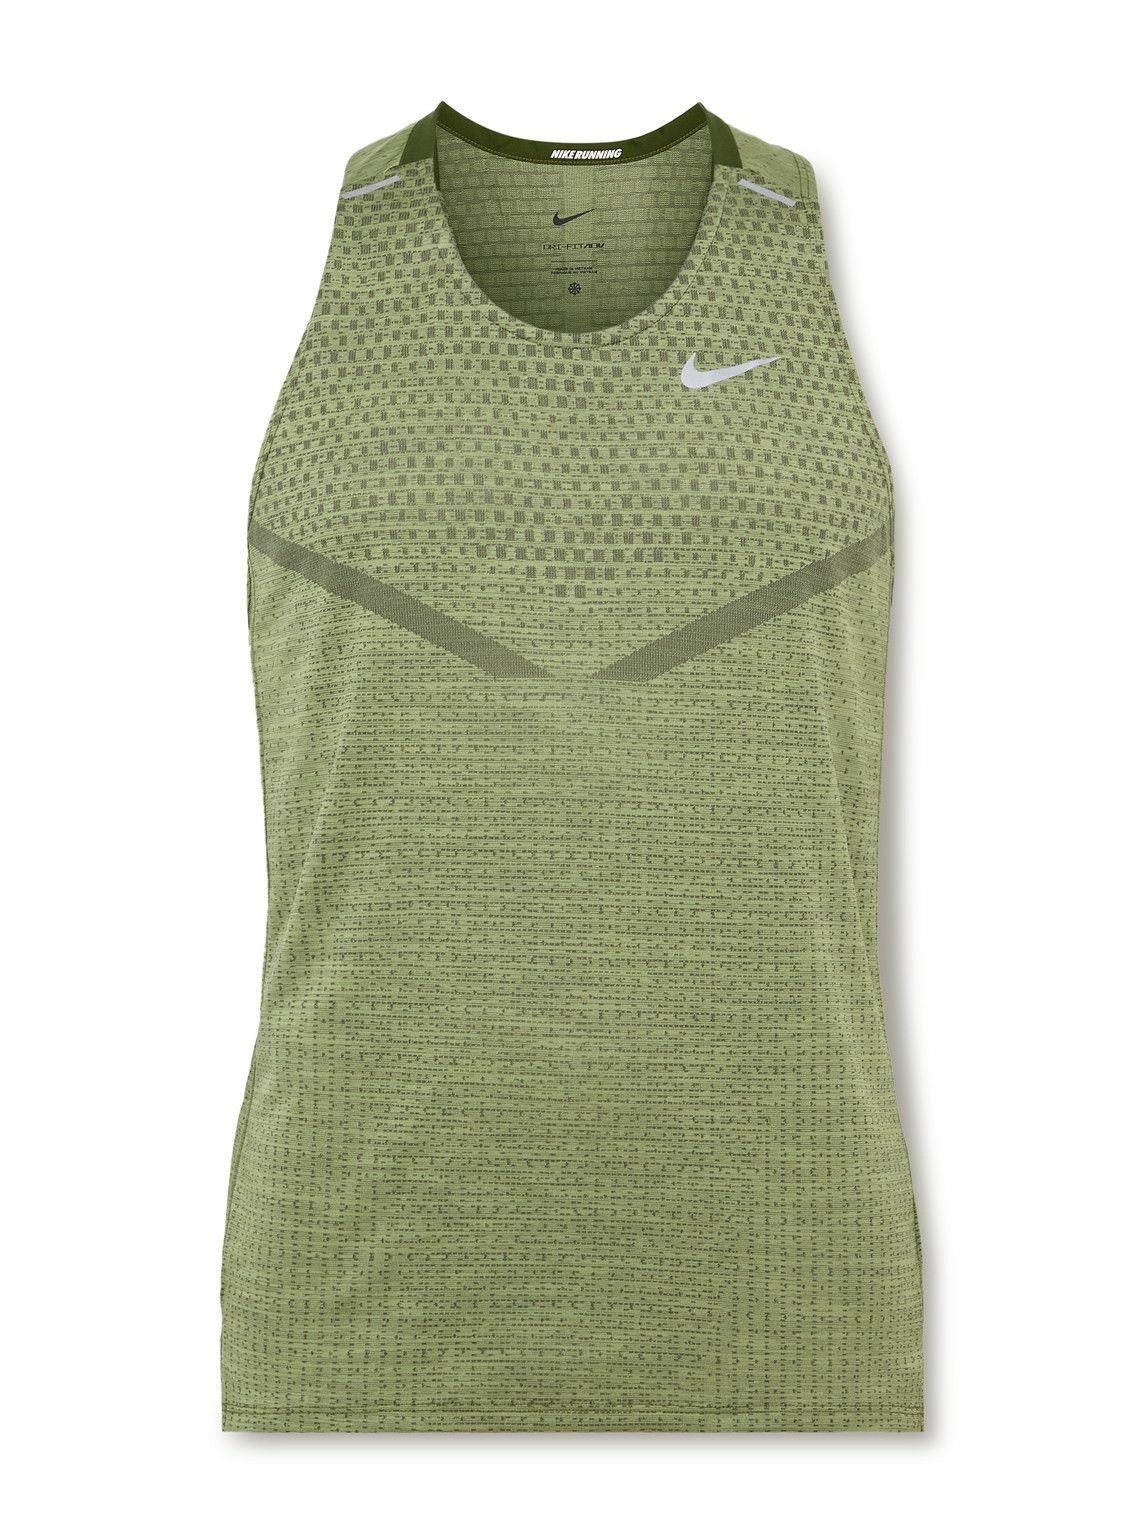 Photo: Nike Running - TechKnit Ultra Slim-Fit Dri-FIT ADV Tank Top - Green